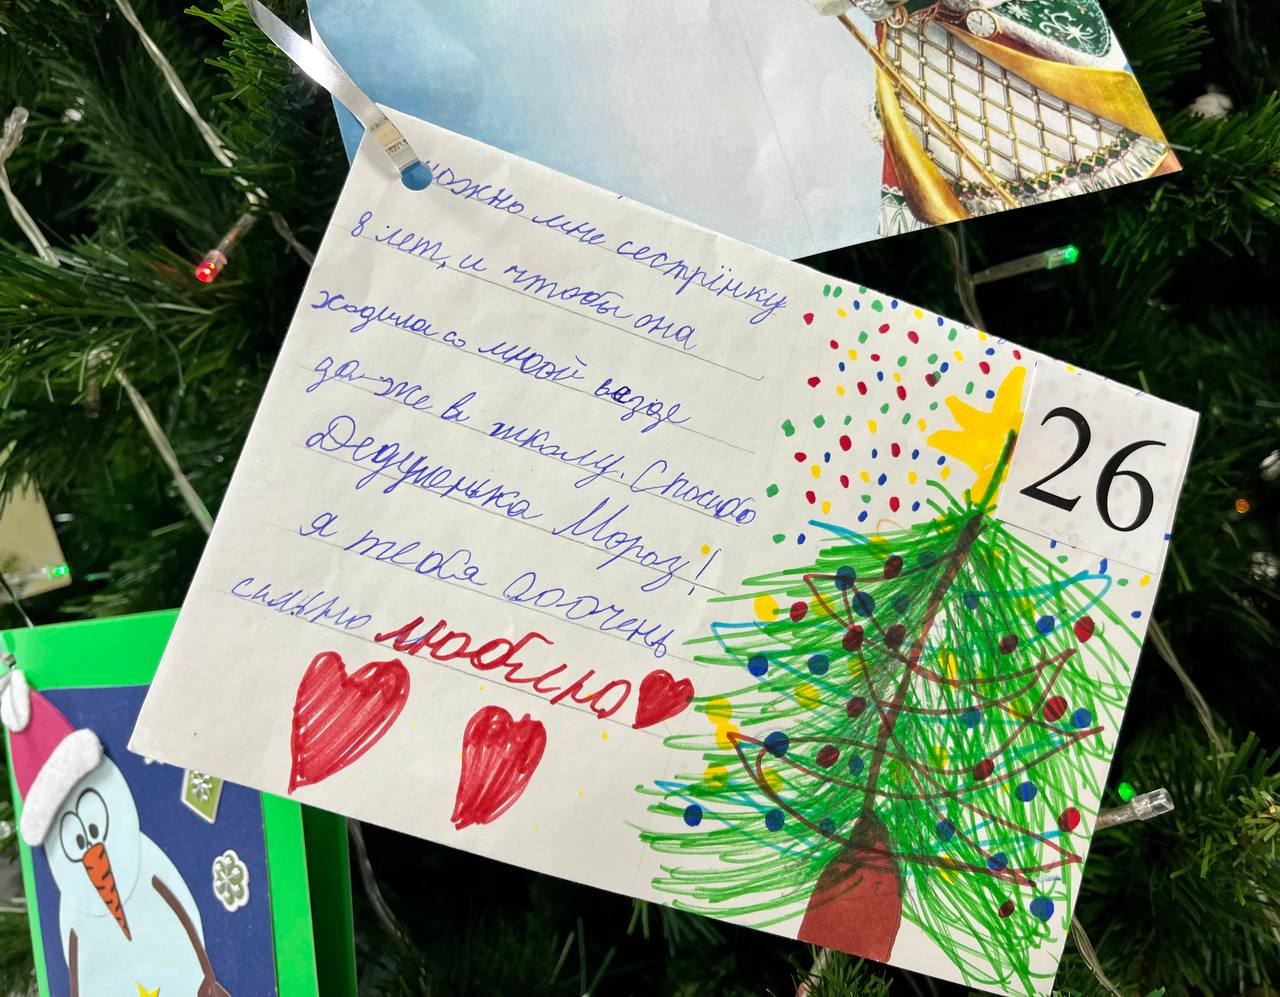 То самое желание юного белгородца о восьмилетней сестре. Фото © Telegram / Демидов